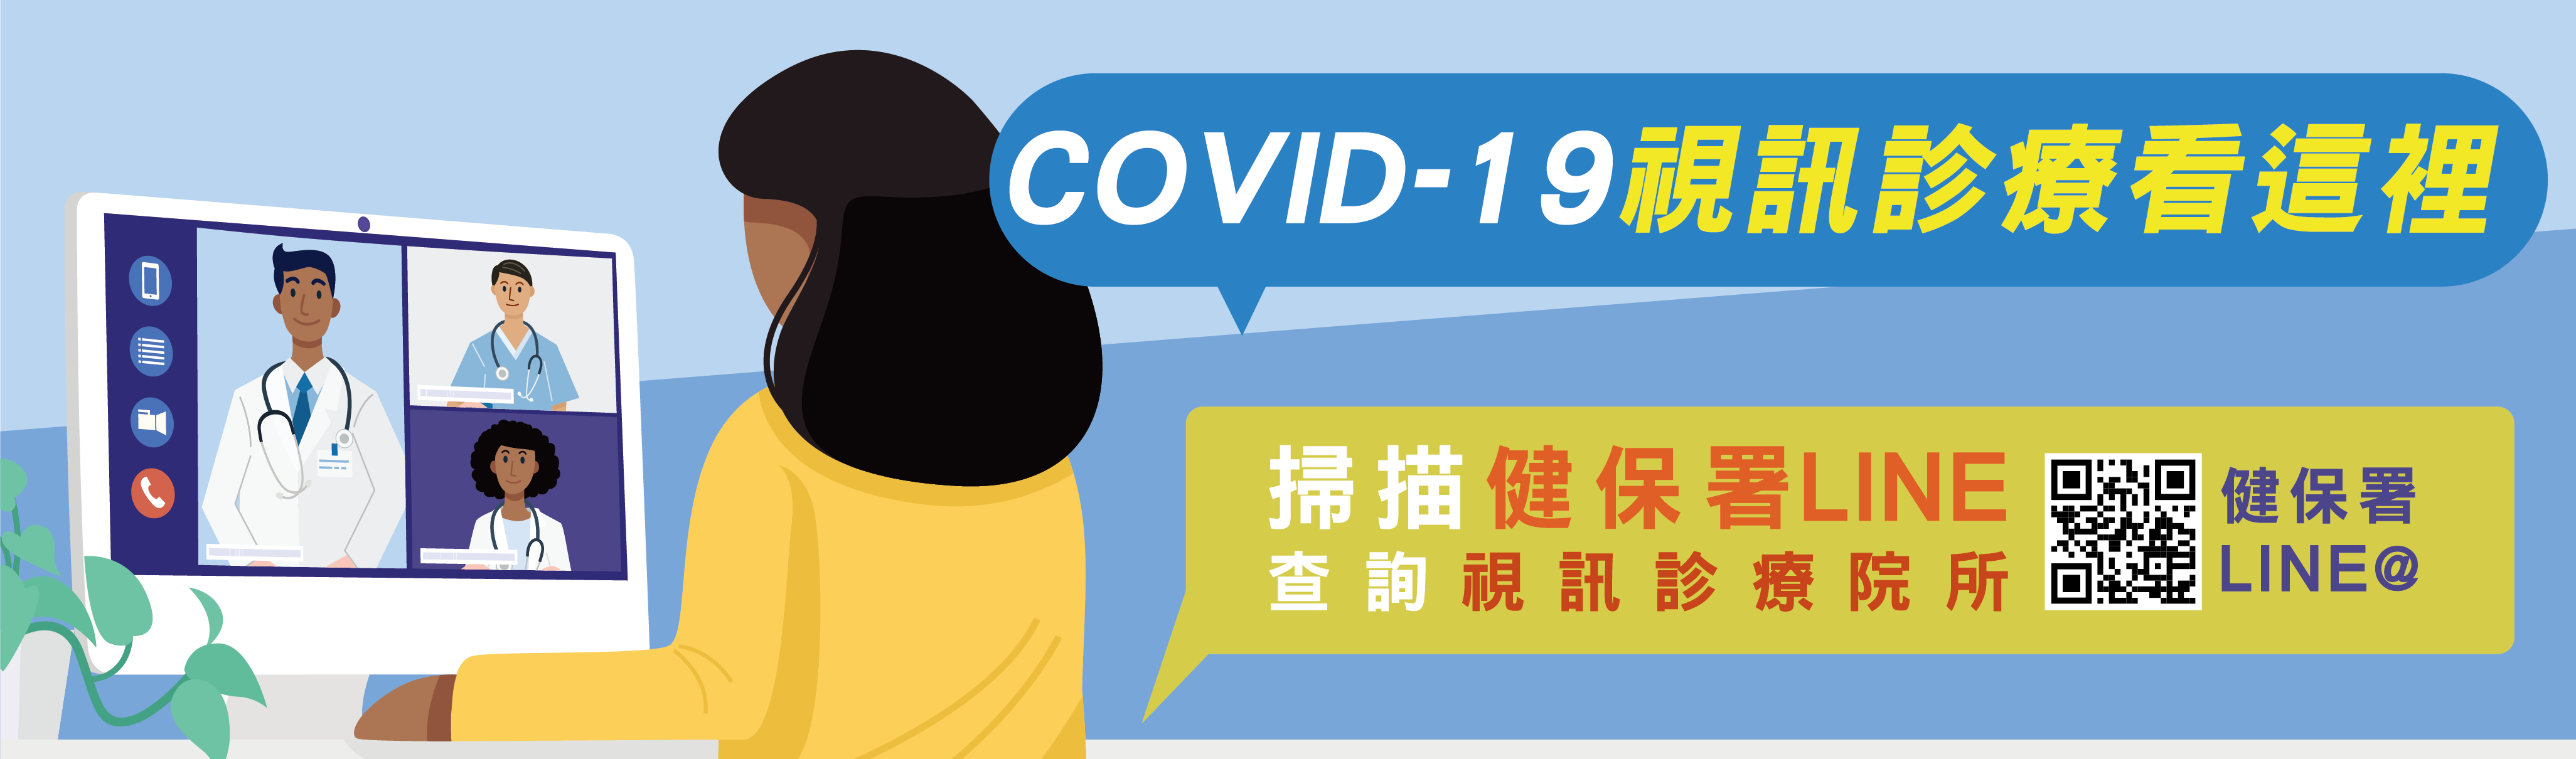 COVID-19視訊診療看這裡